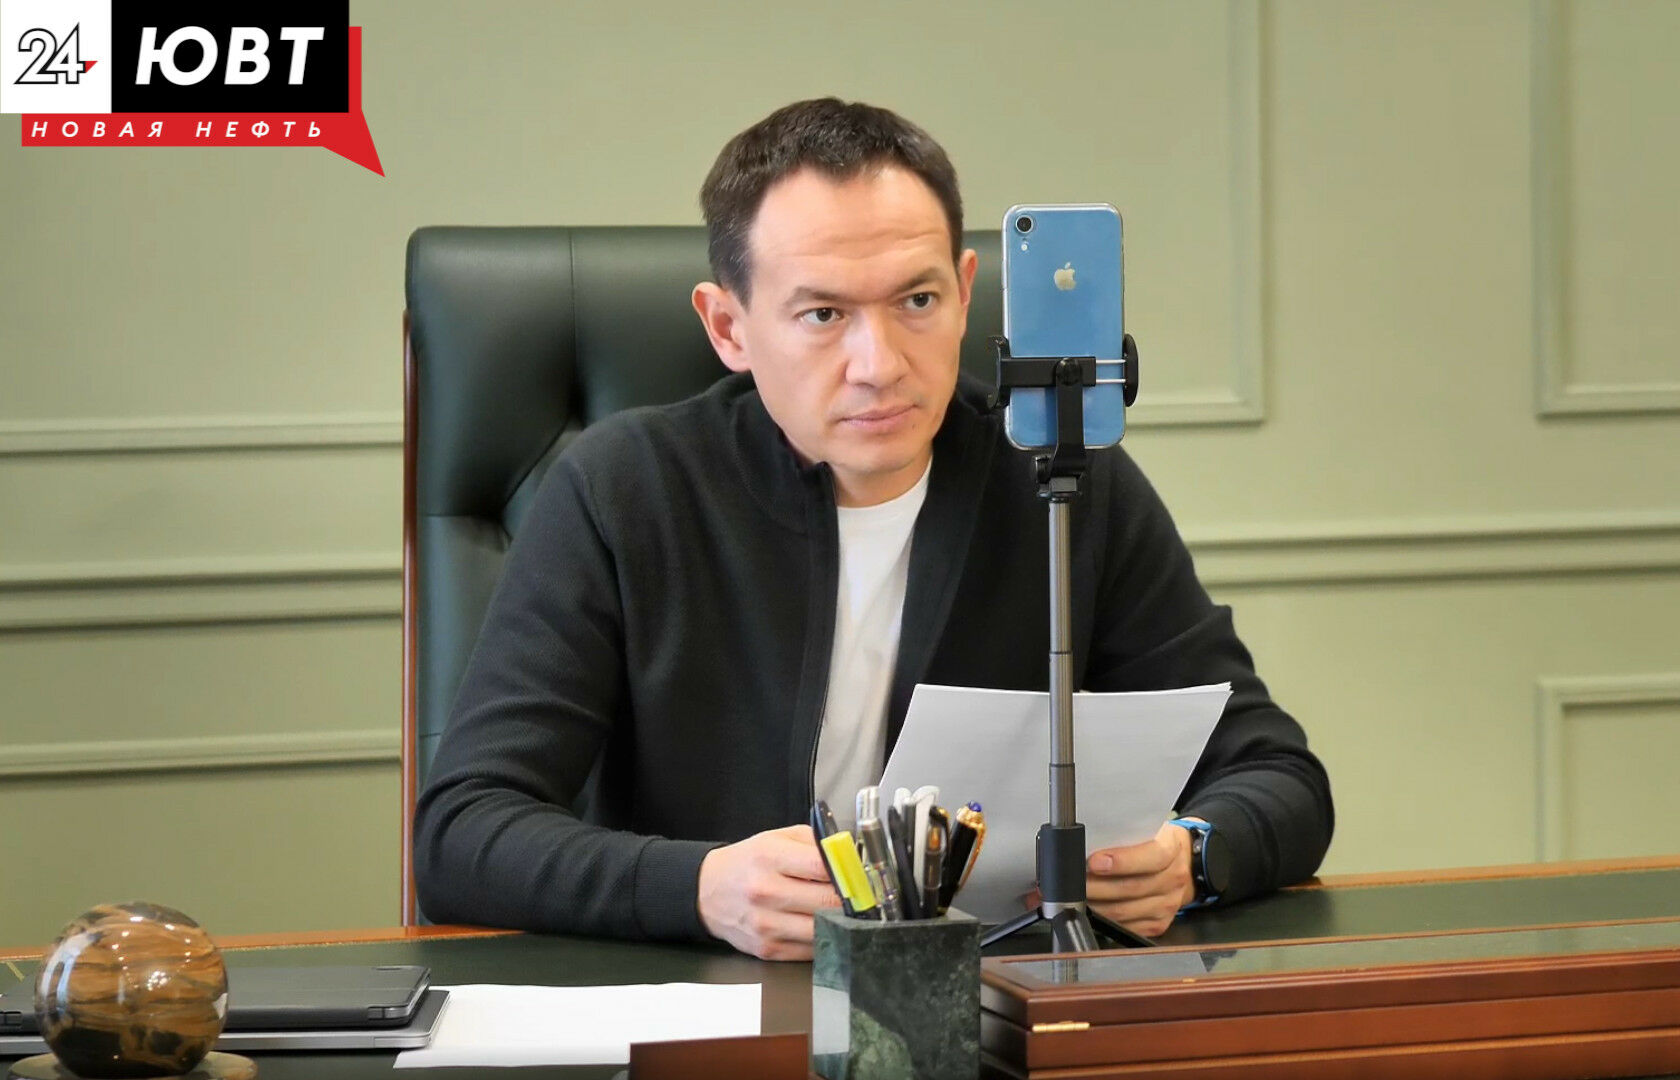 Не слухи, а скорее фантазии: глава Альметьевского района опроверг информацию о своем уходе